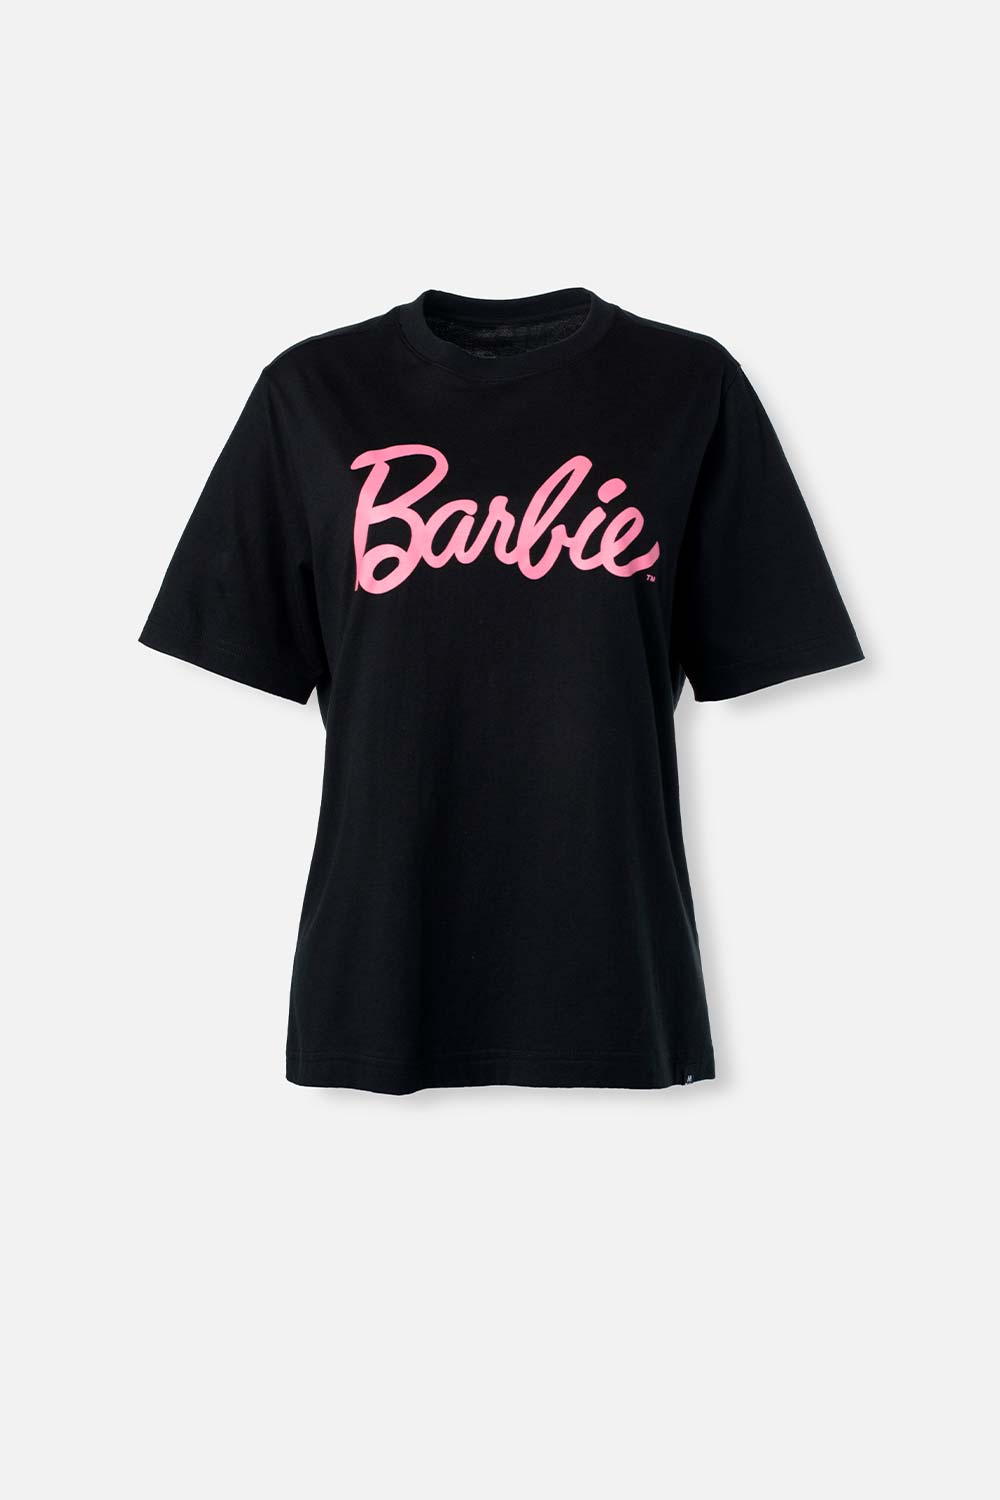 Camiseta de Barbie negra manga corta para mujer - MoviesShop